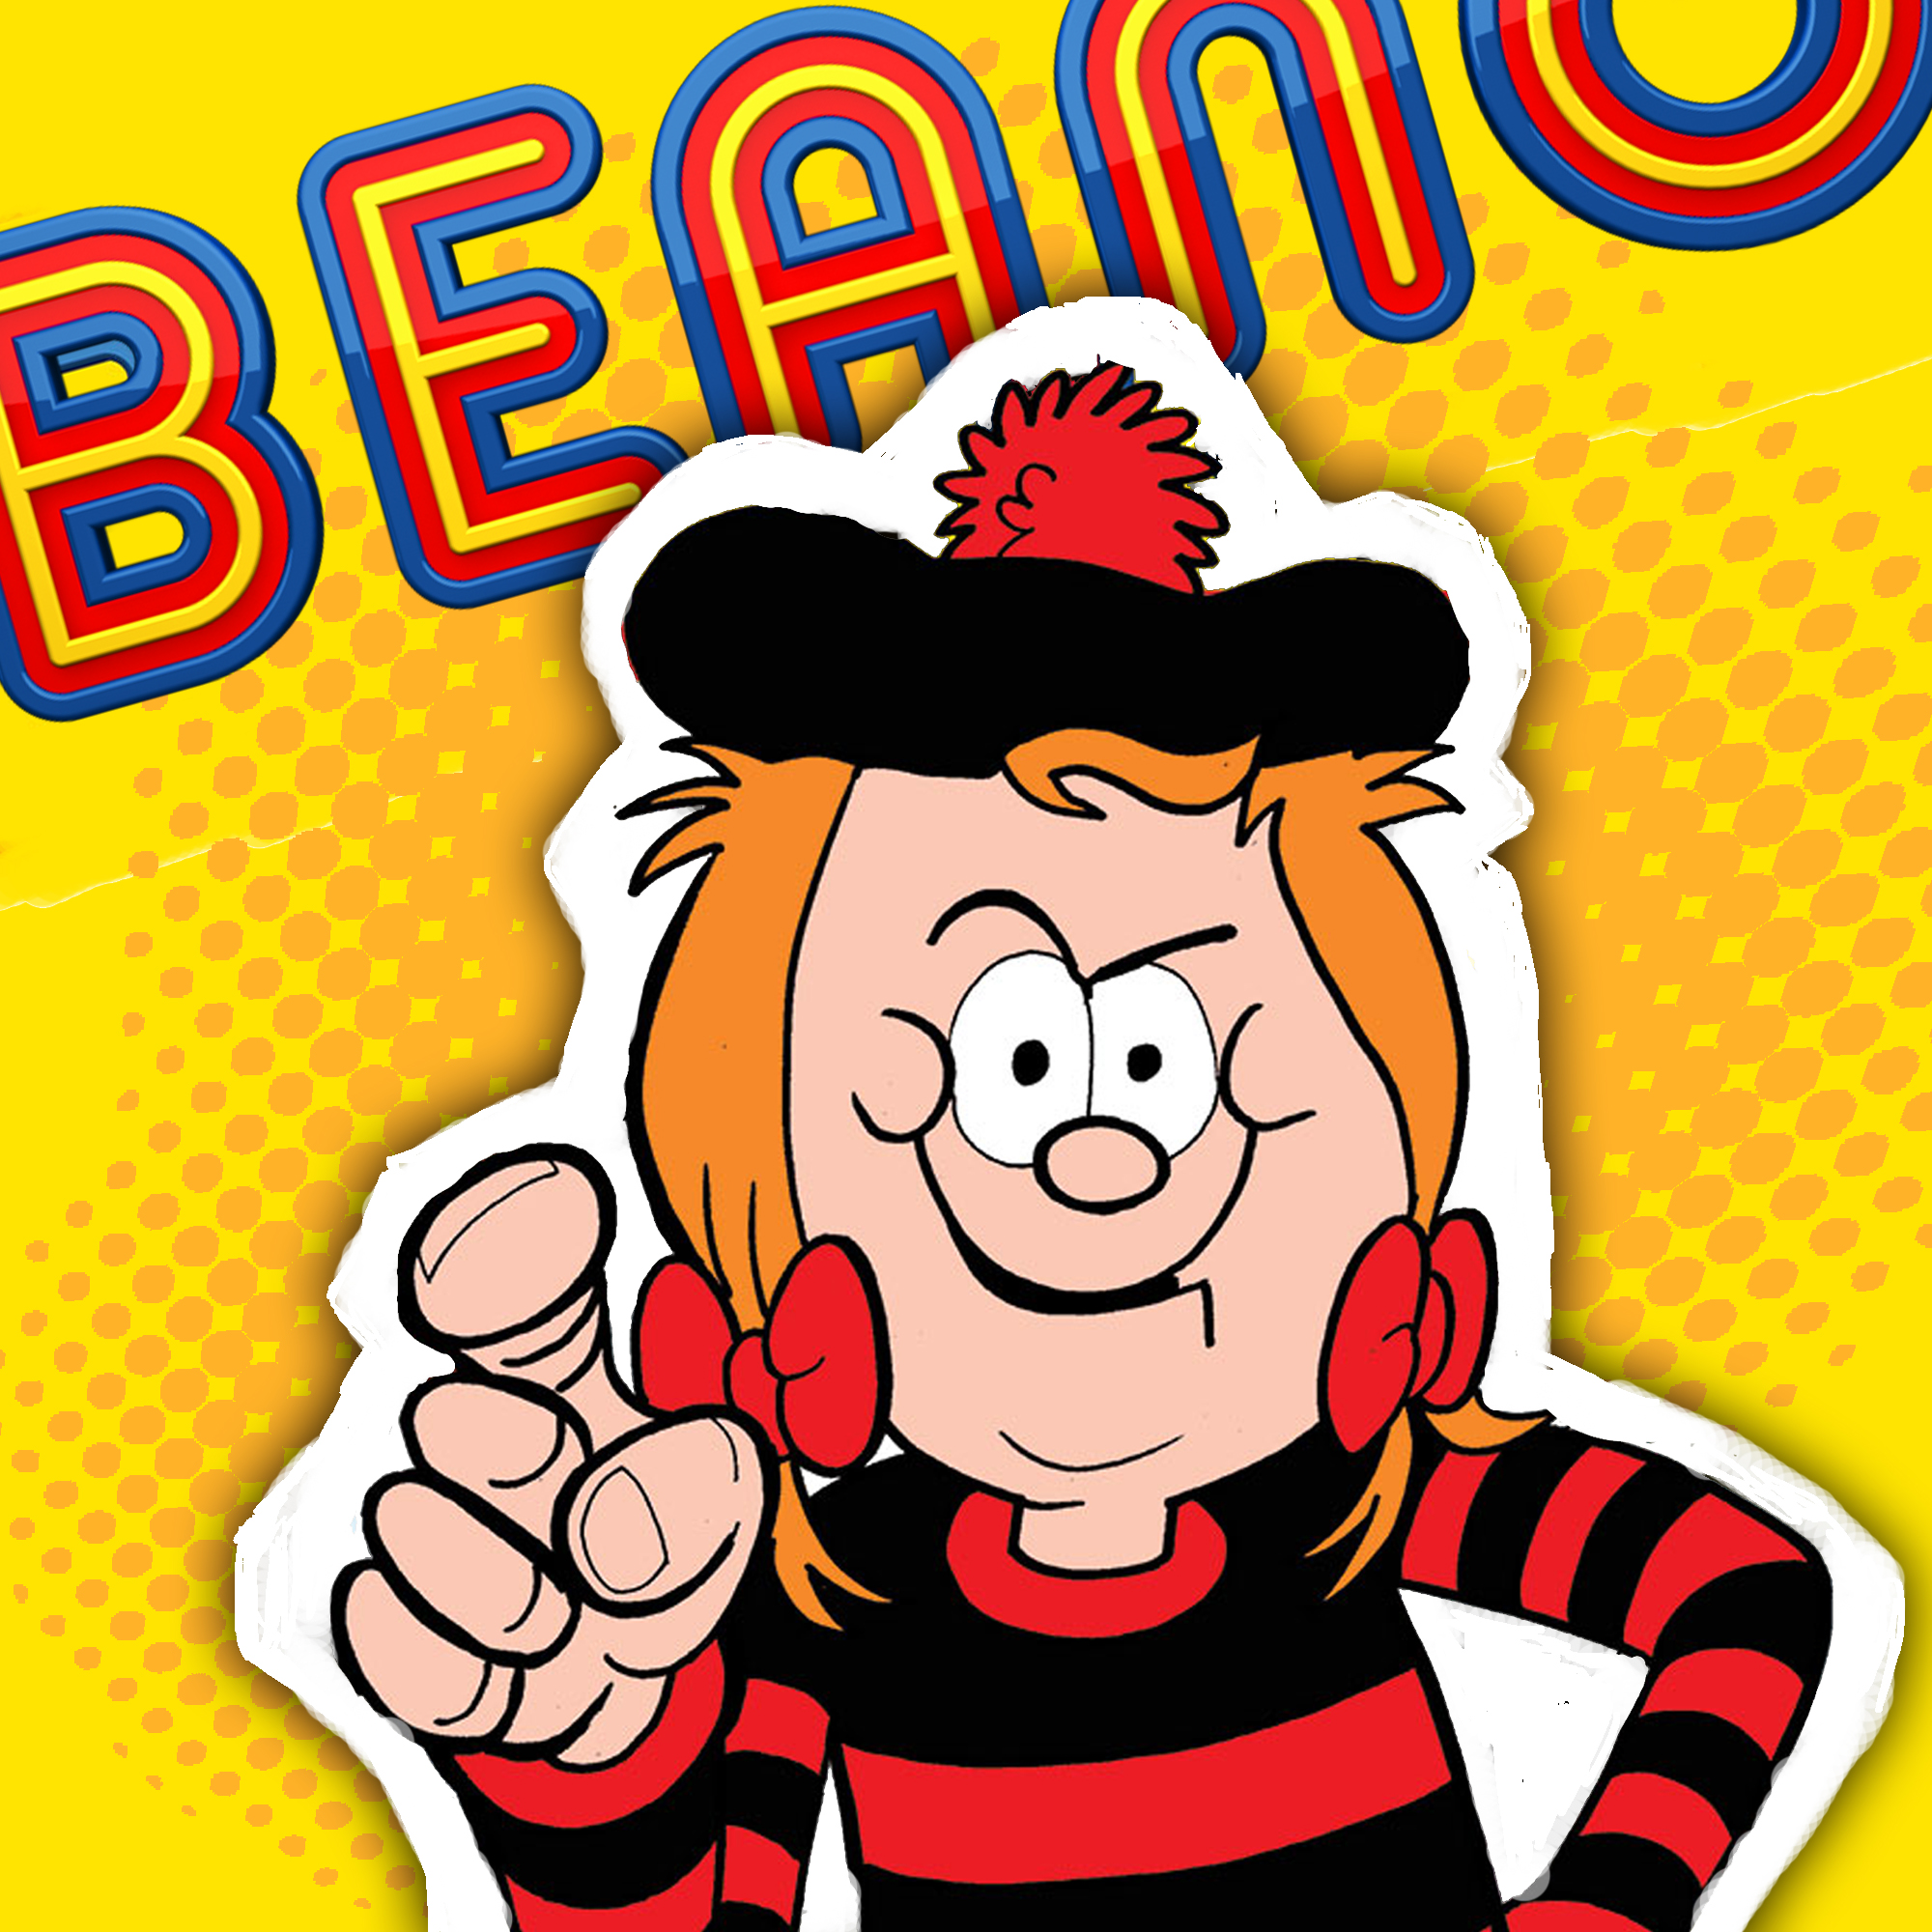 Minnie the Minx June 2017 Beano